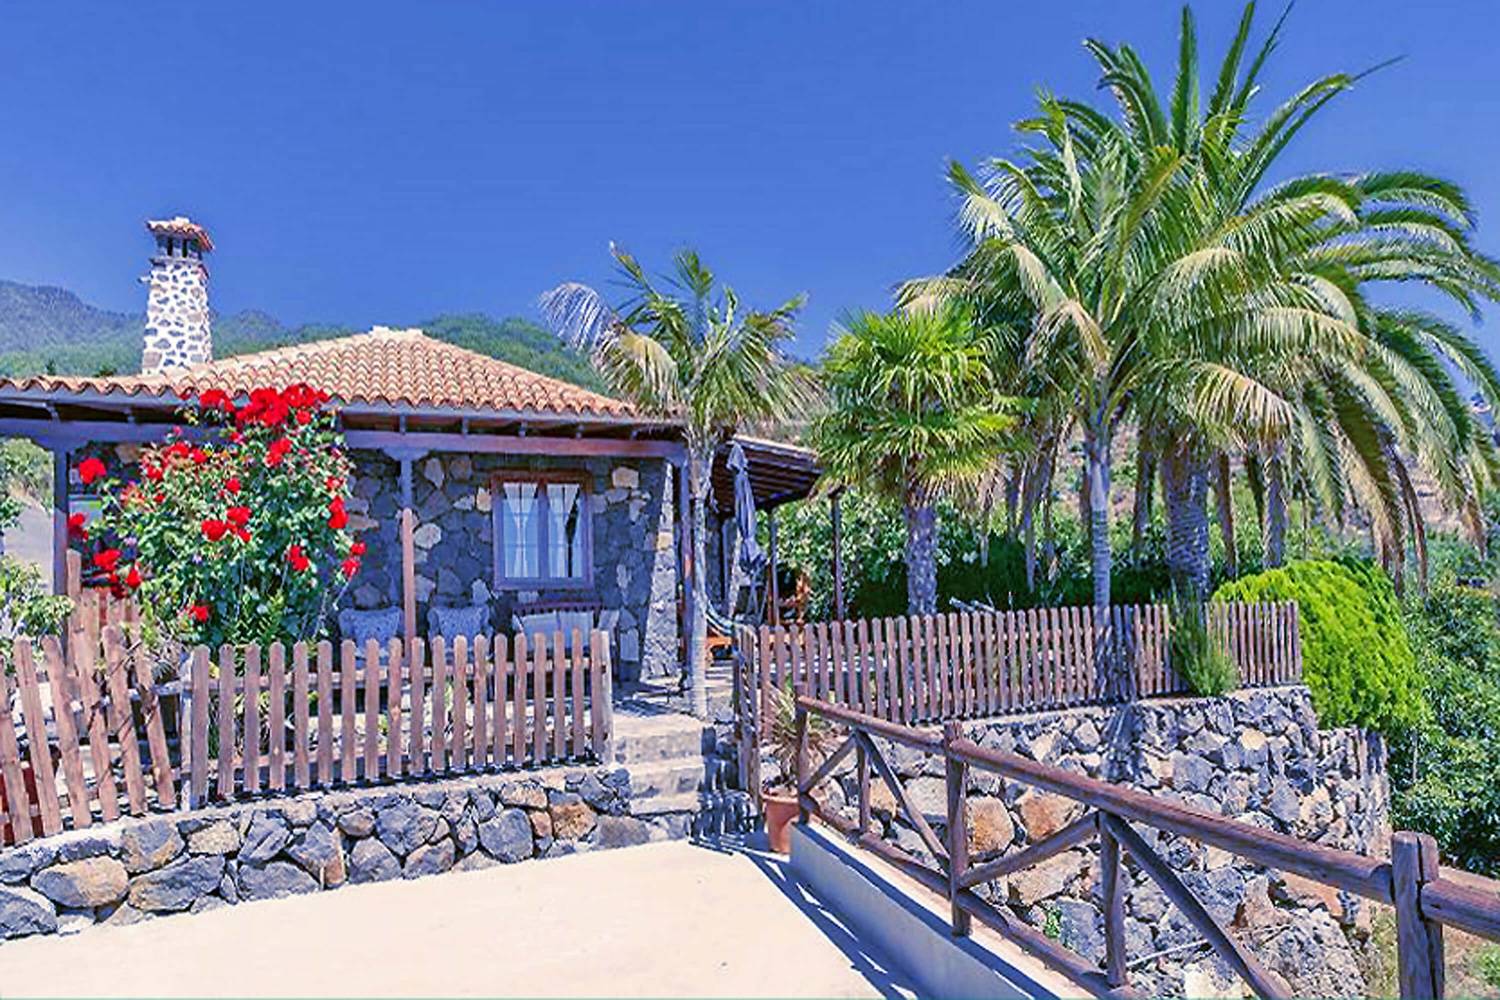 Rustikales und komplett renoviertes Haus mit einer Inneneinrichtung, die Holzelemente und warme Farben kombiniert, und einem schönen Garten mit erfrischenden Palmen